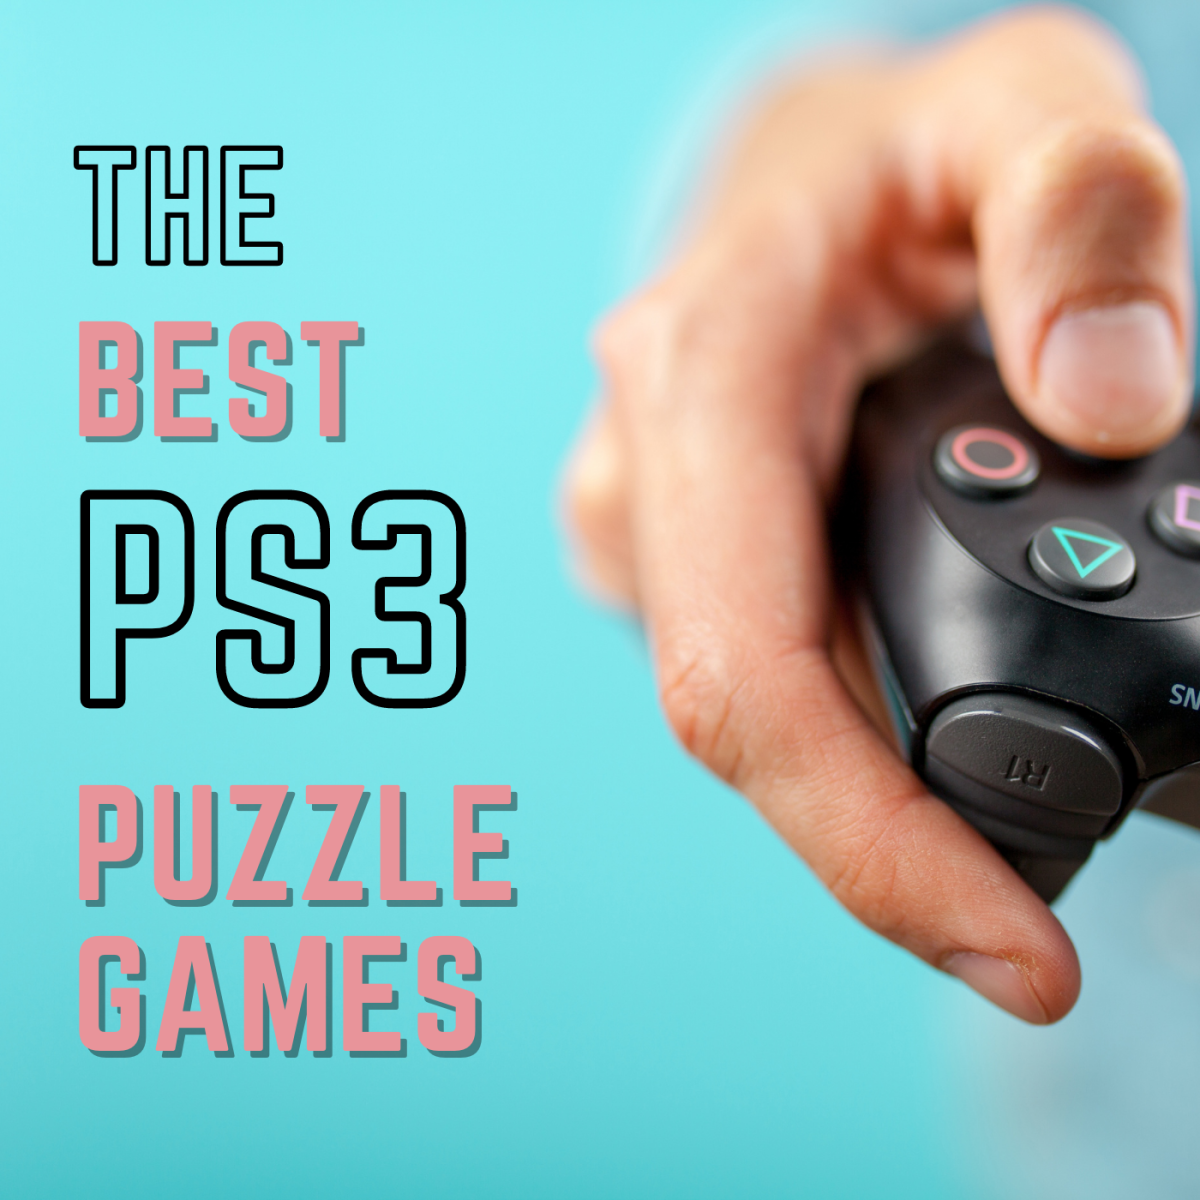 37 Jogos de Puzzle para PlayStation 3 que você tem que conhecer!